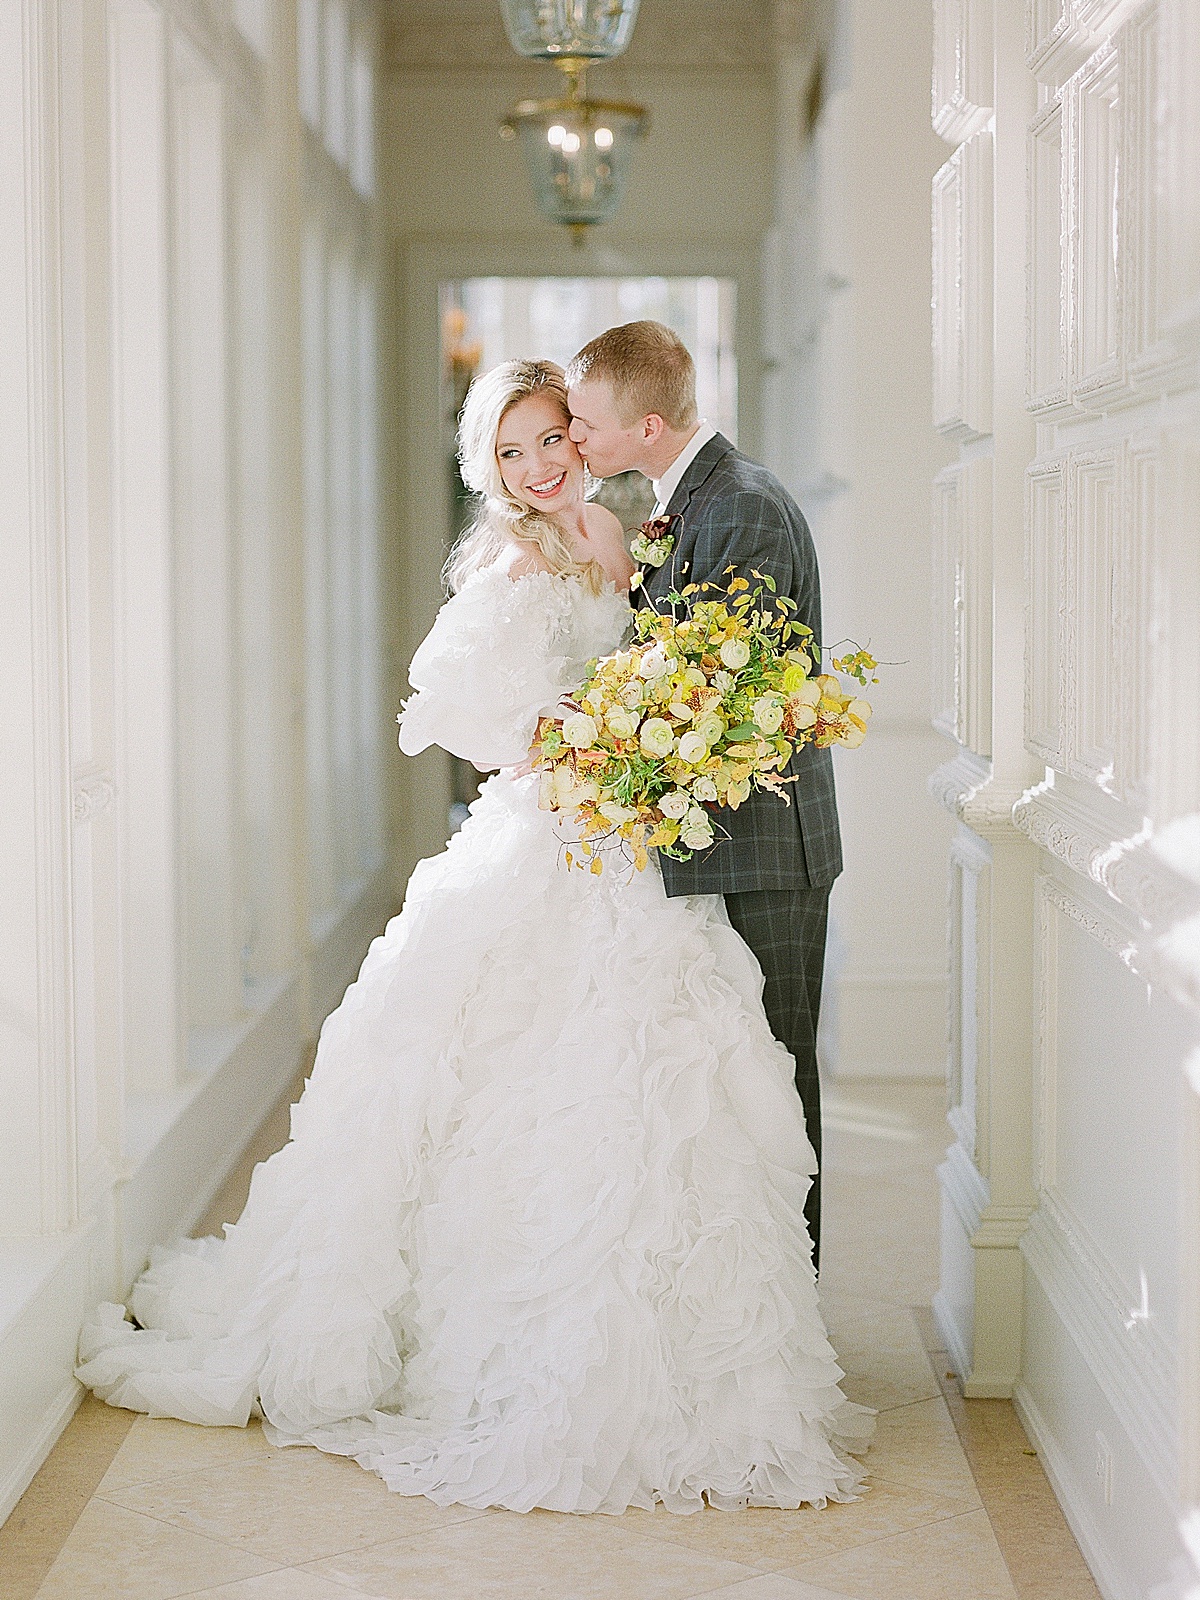 Wedding Venues in Dallas Groom Kissing Bride Smiling Photo